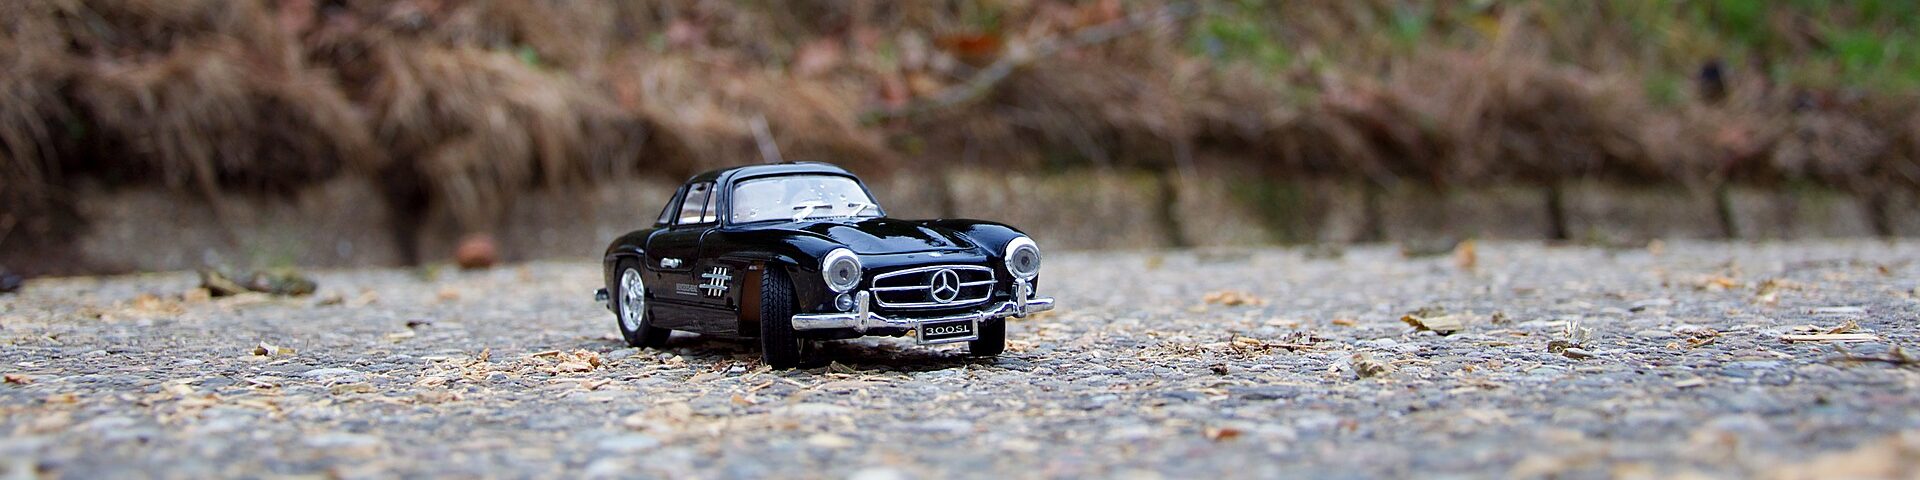 Spielzeugautoe Mercedes Benz am Strand